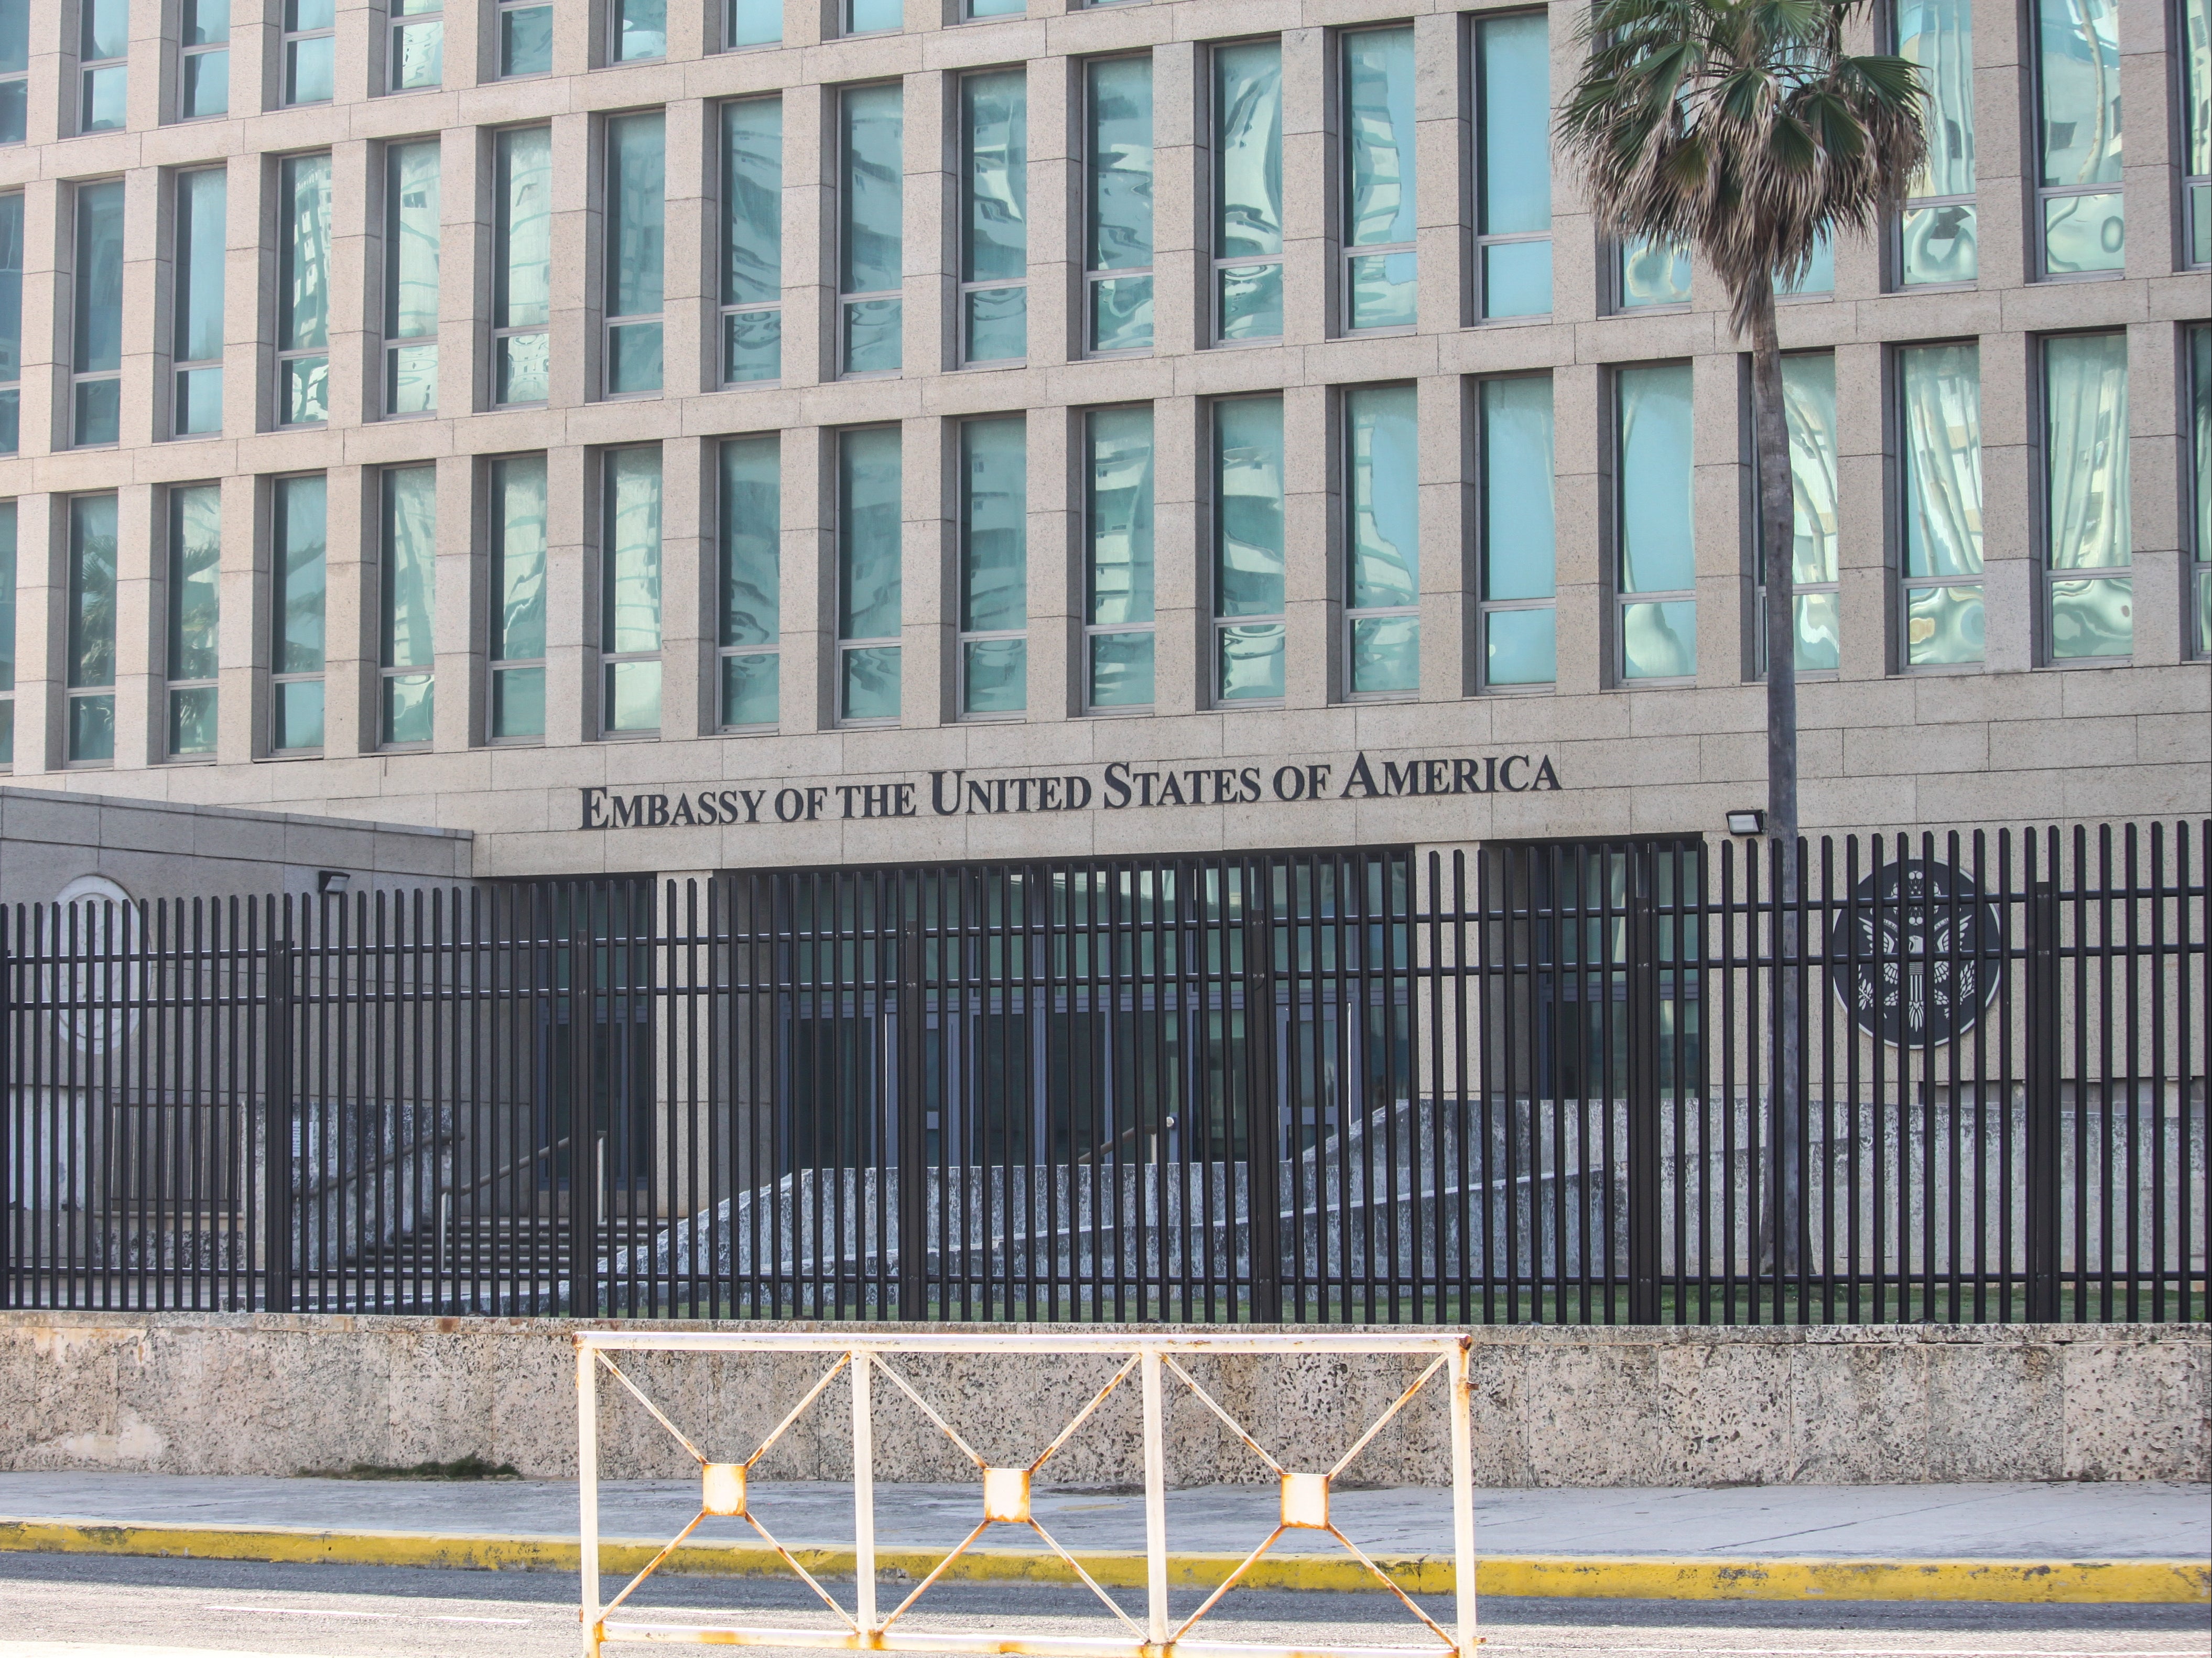 Outside the US embassy in Havana, Cuba